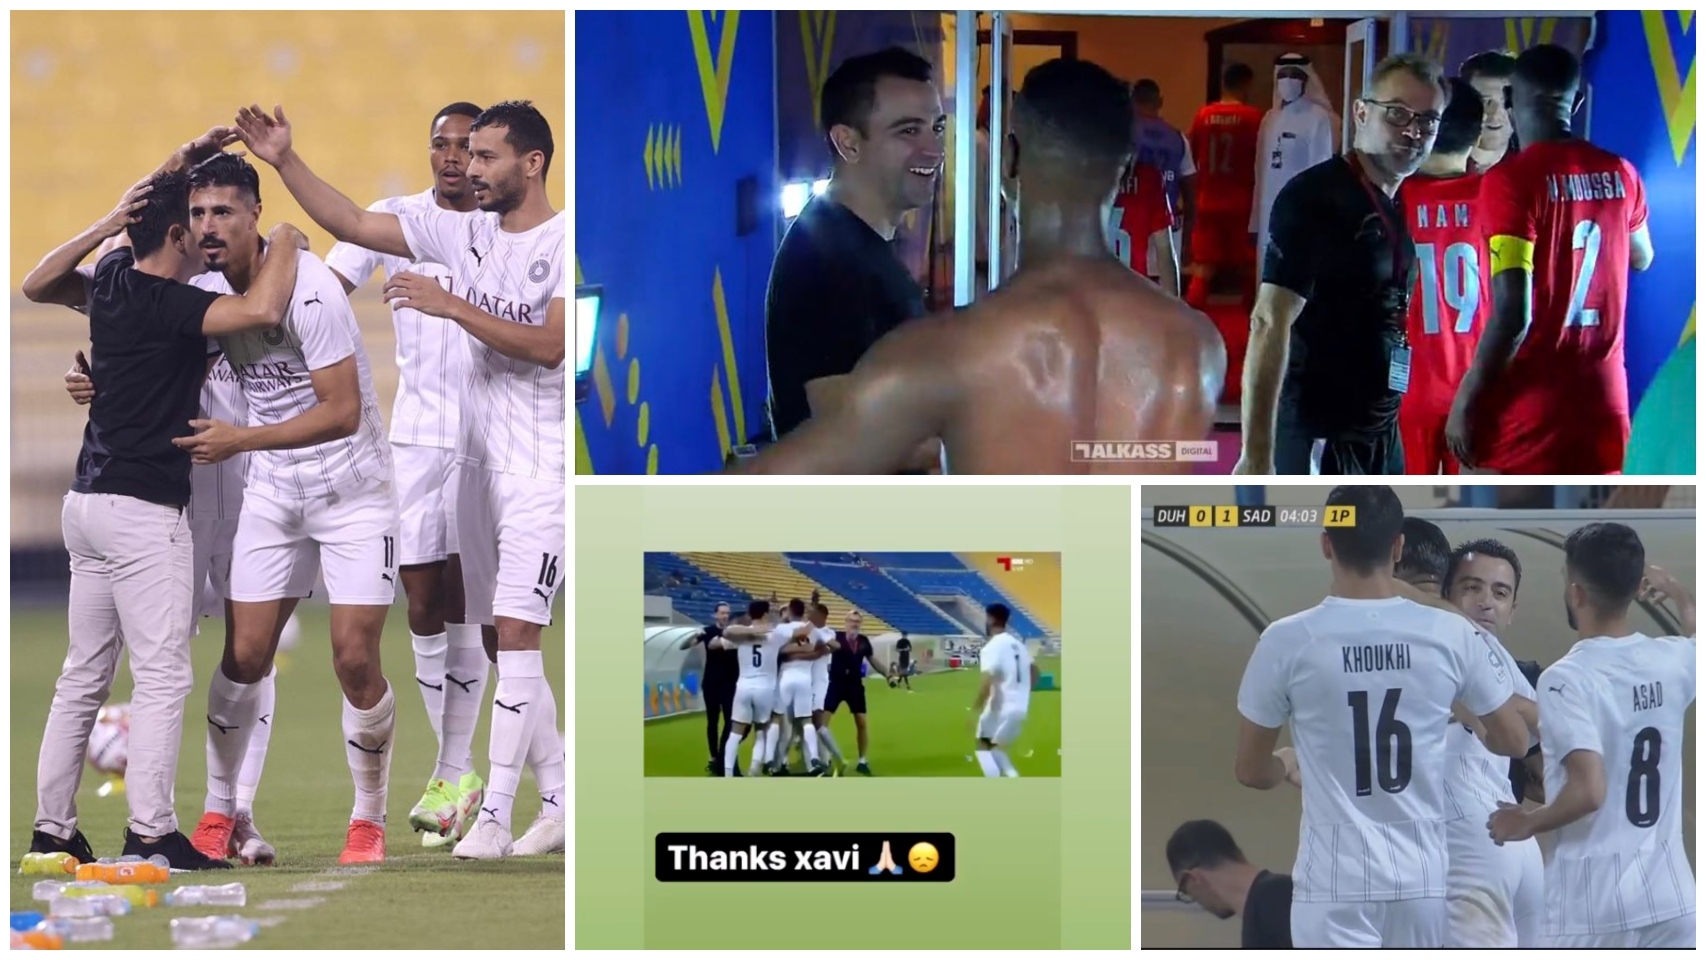 La despedida de los jugadores del Al-Sadd a Xavi Hernández